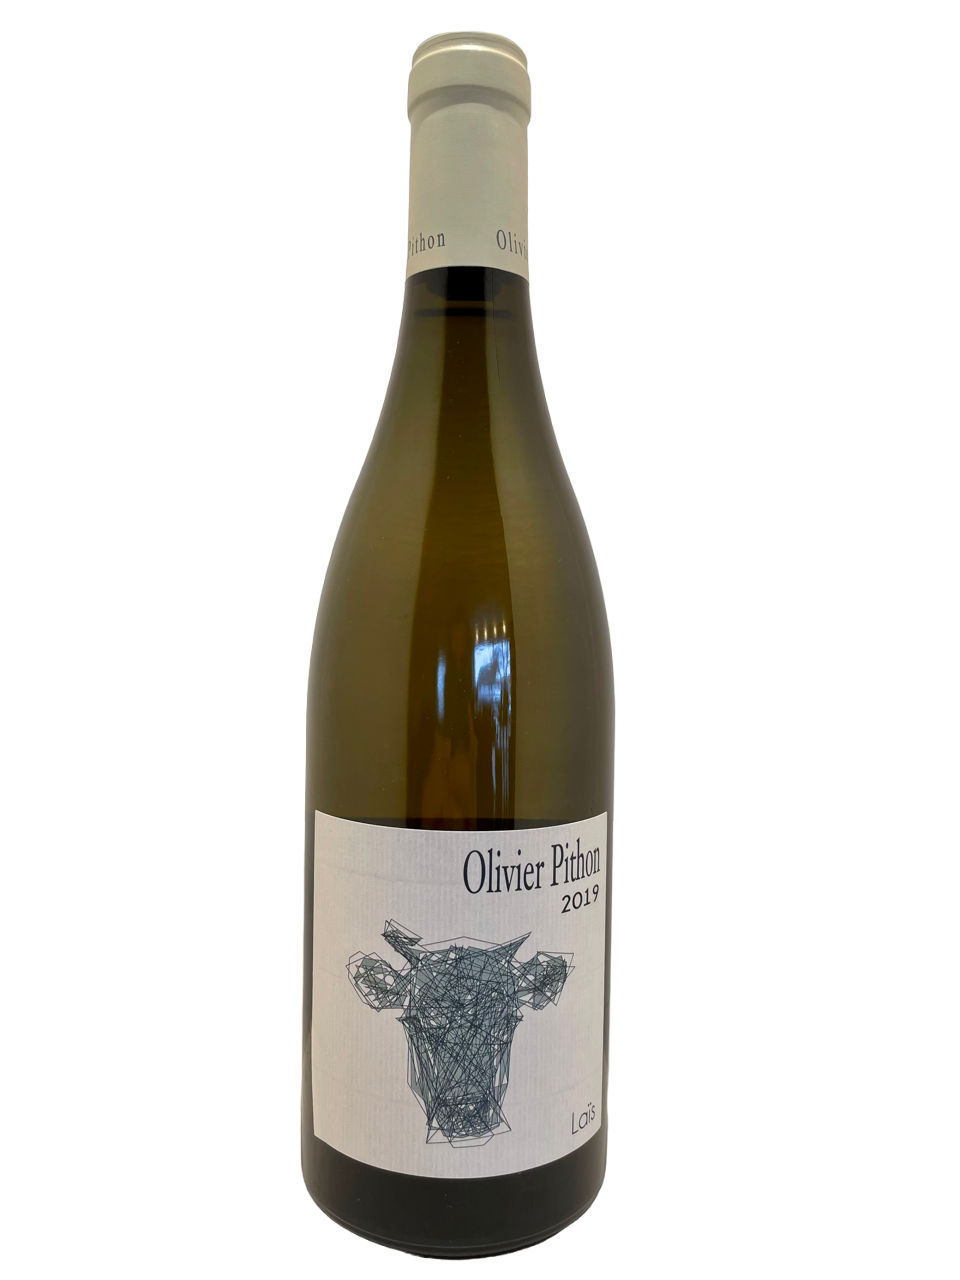 Lnaguedoc roussillon domaine olivier pithon vin biodynamie organic wine igp côtes catalanes laïs blanc